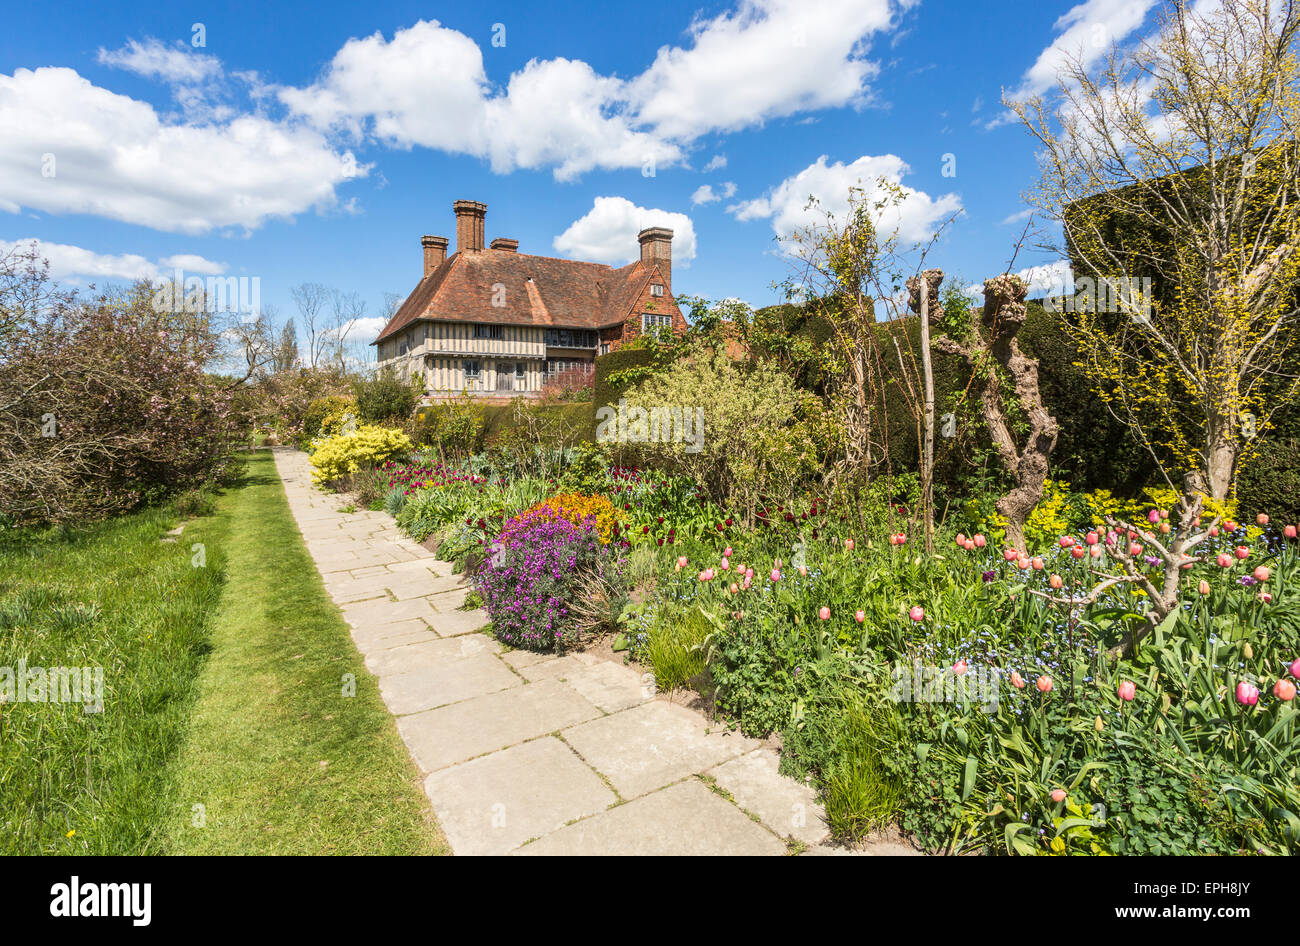 La longue frontière à Great Dixter, une maison de campagne par Edwin Lutyens, jardin par Christopher Lloyd au printemps, avril, Rye, East Sussex, UK Banque D'Images